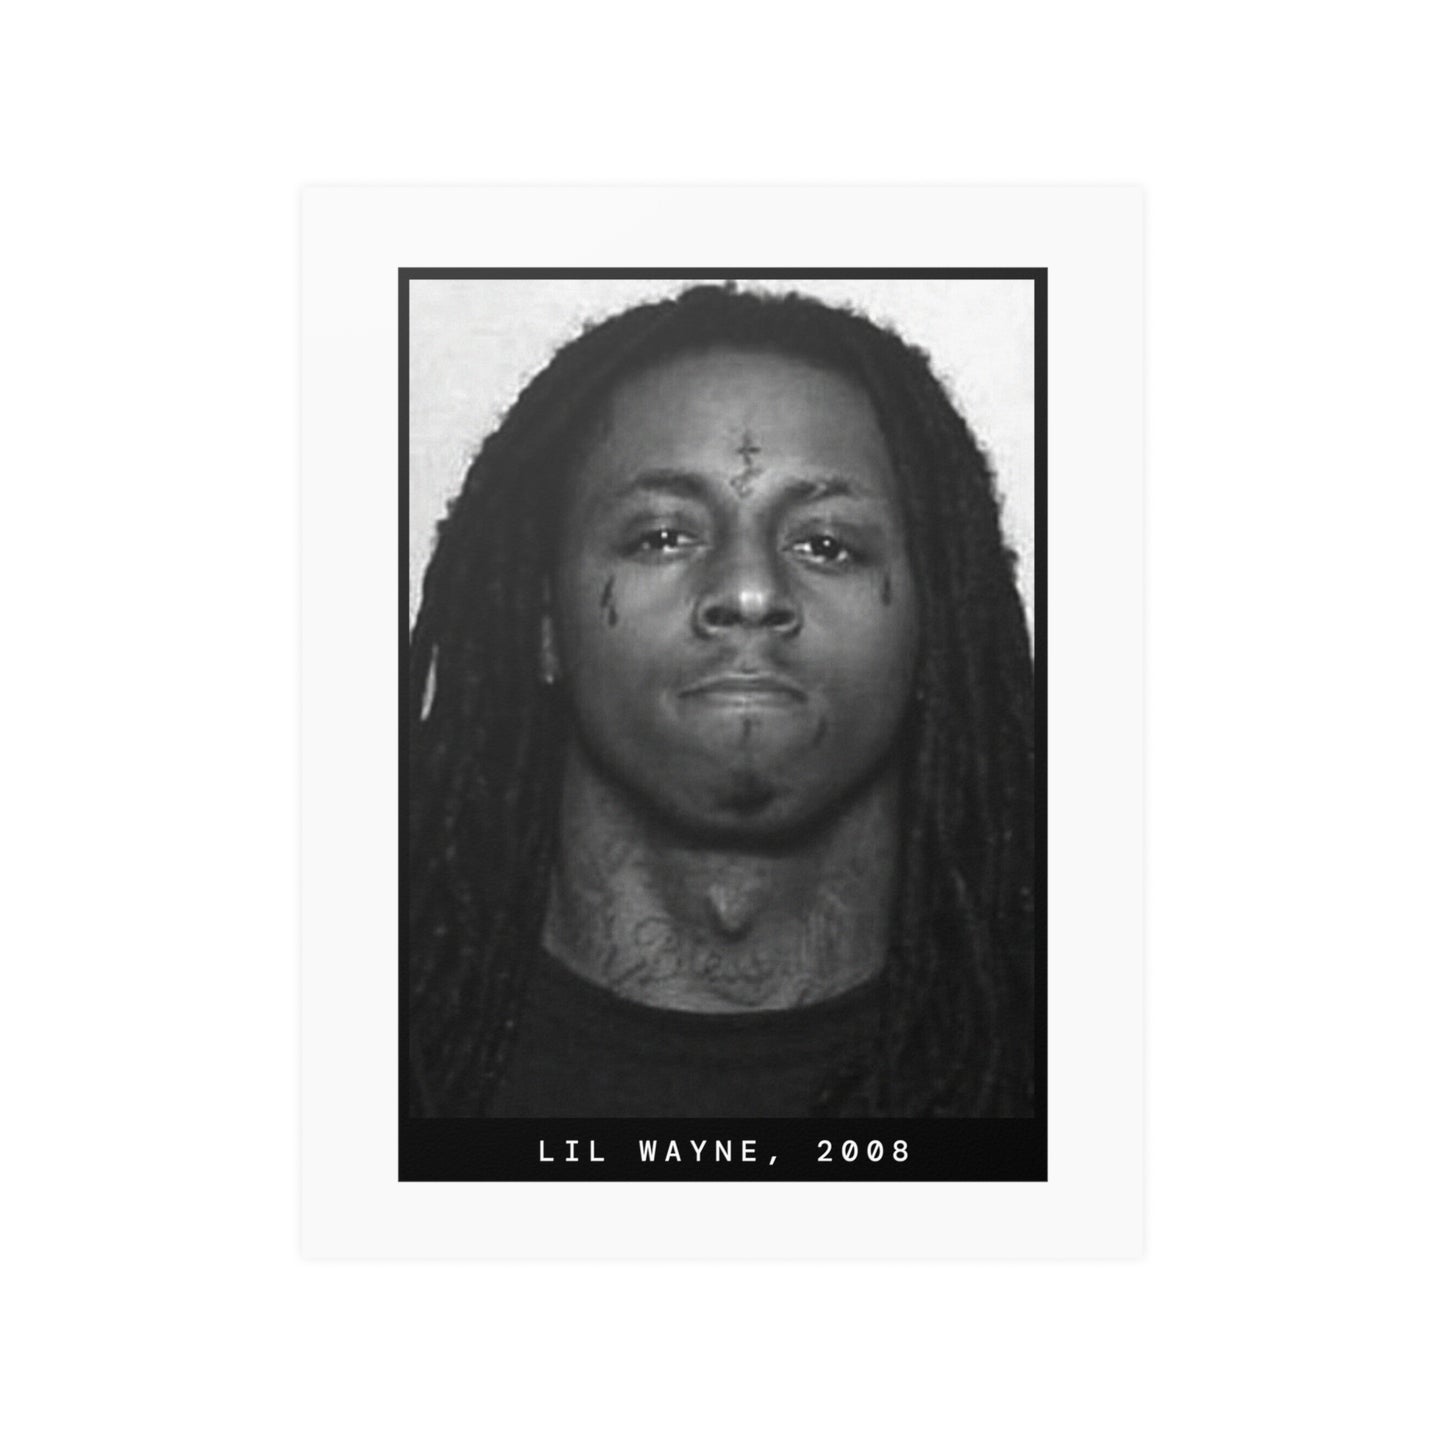 Lil Wayne, 2008 Rapper Mugshot Poster